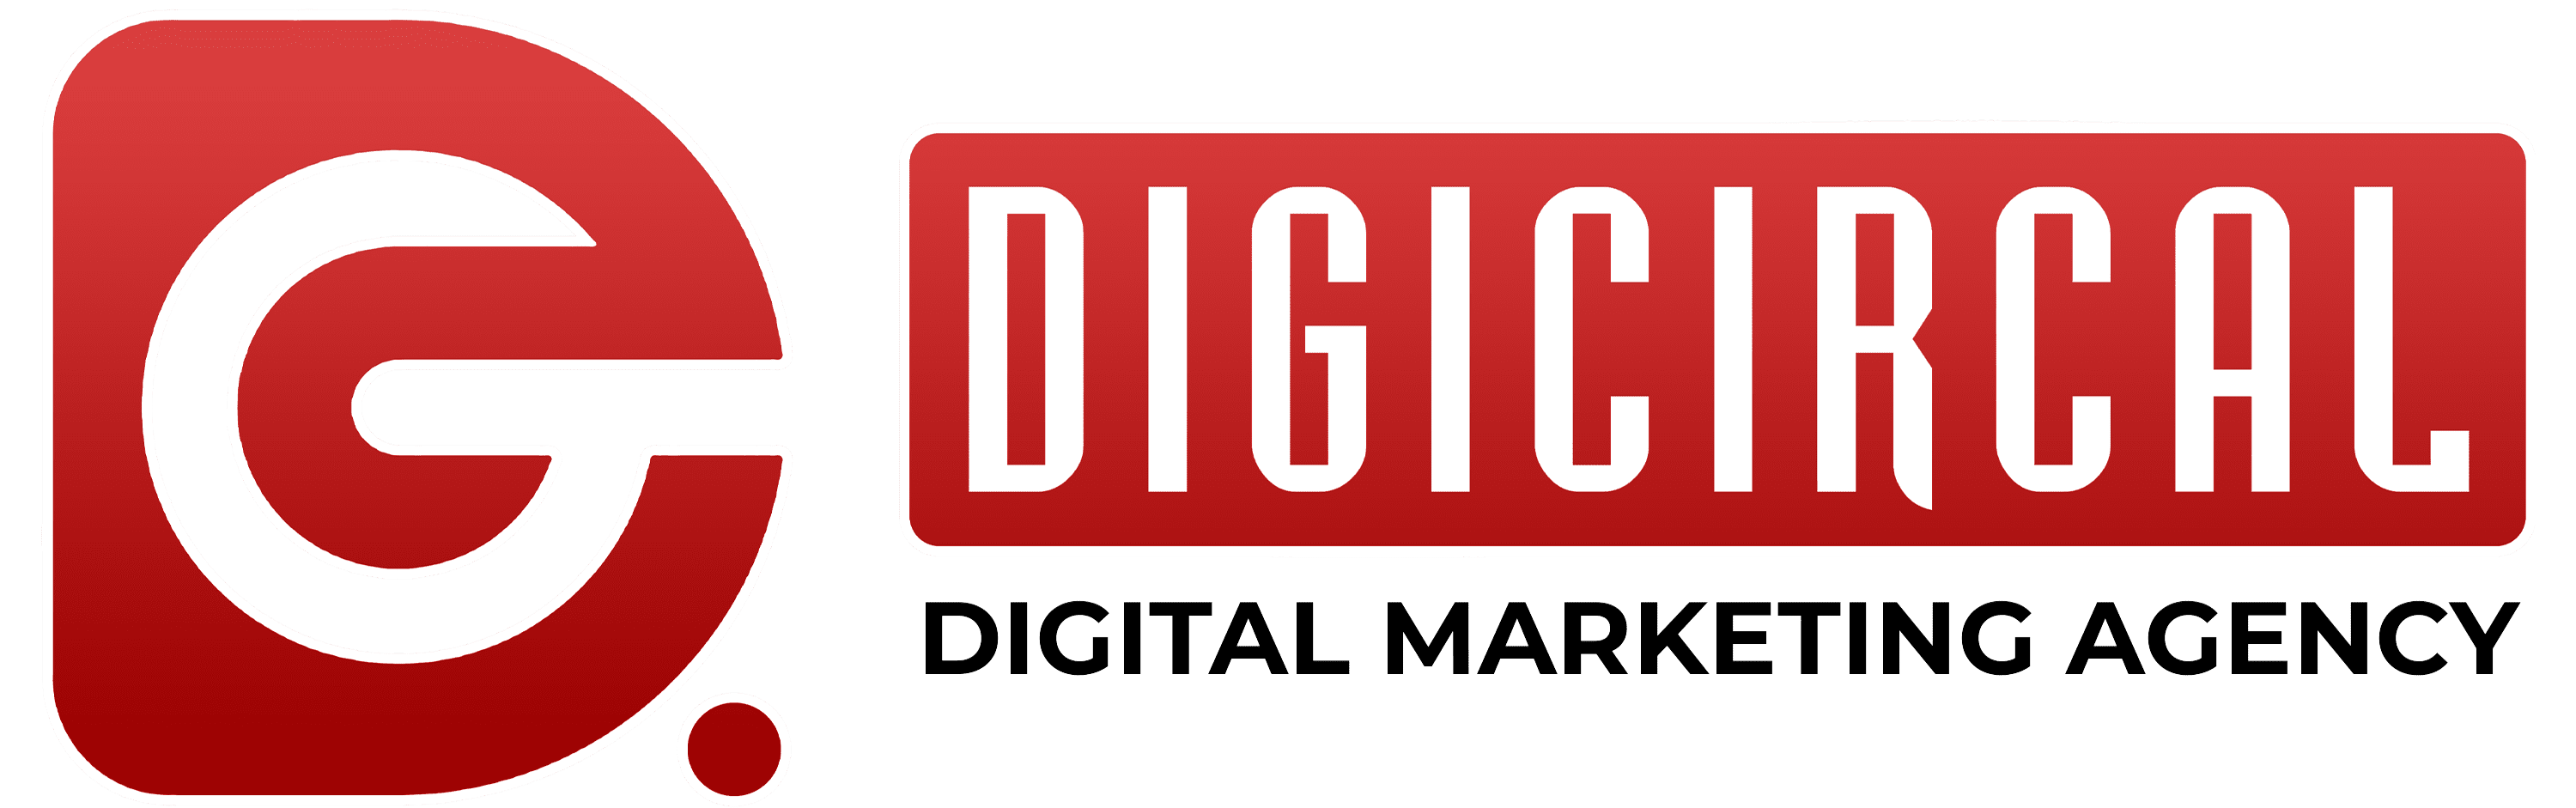 digicircal logo